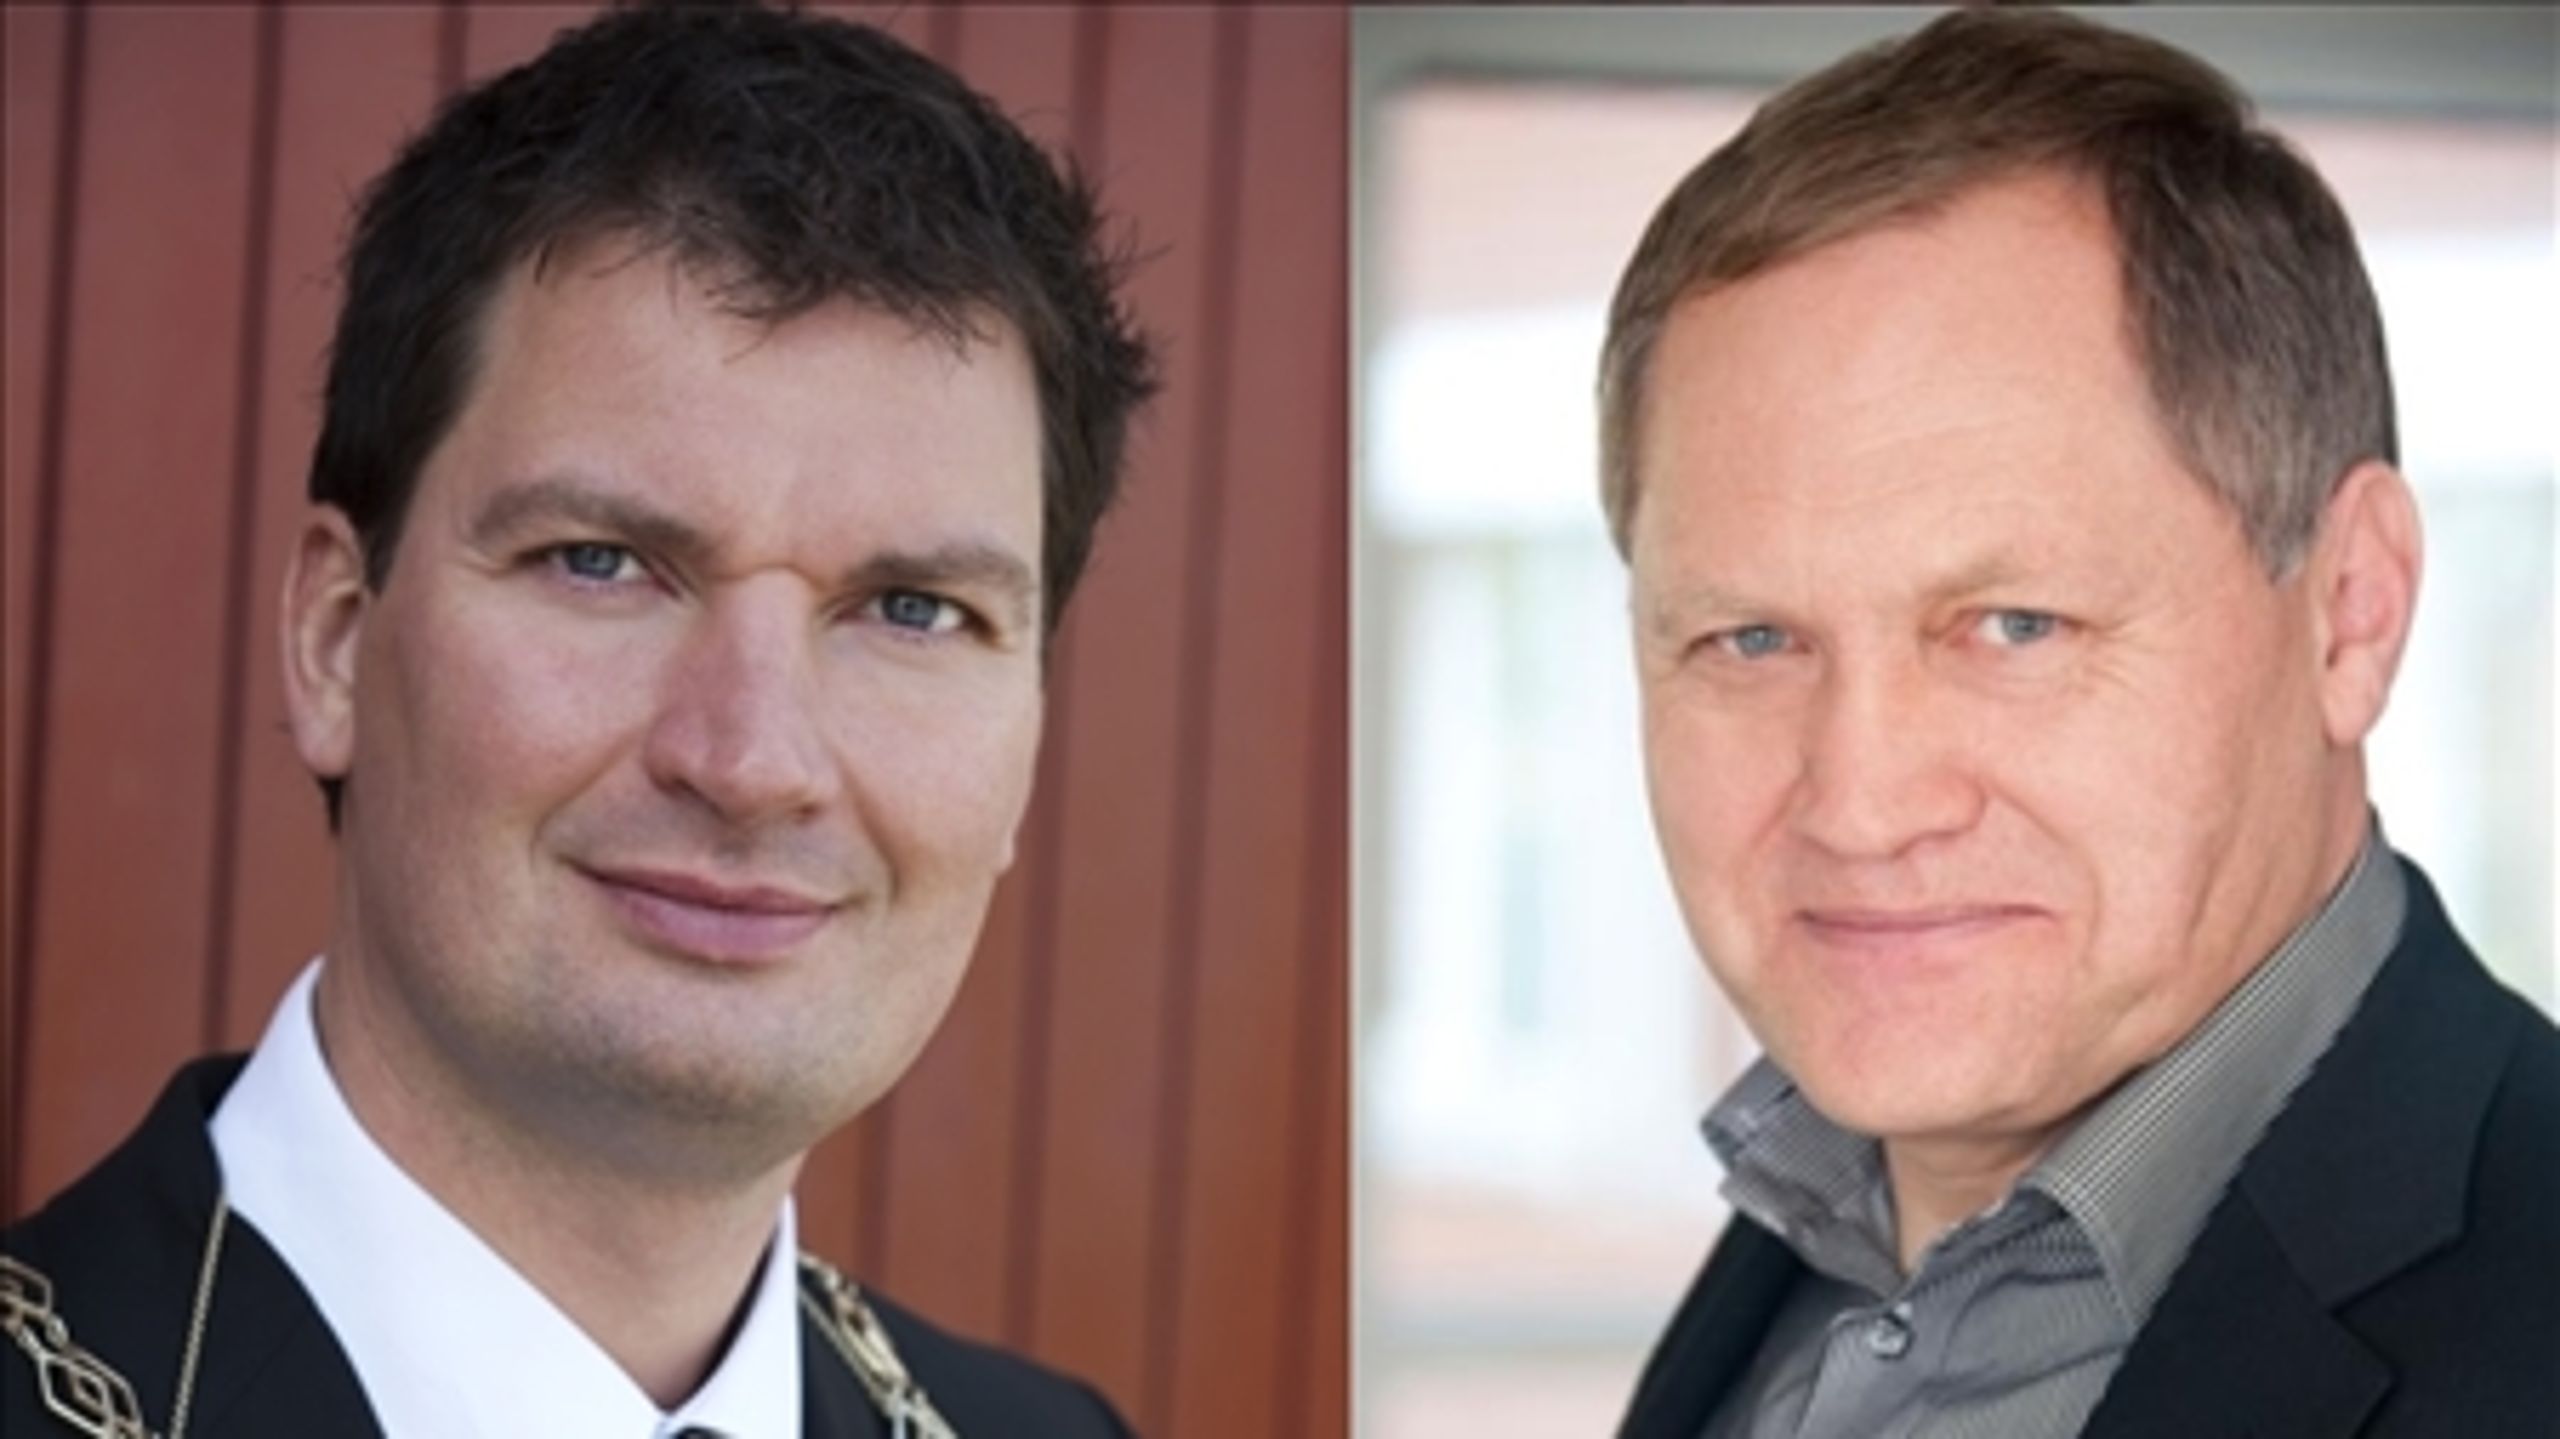 Økonomiudvalget i Vallensbæk har besluttet at indlede en proces om at afskedige kommunaldirektør Bjarke Steen Johansen (th), der har rejst anklager mod sin egen borgmester, Henrik Rasmussen (tv), om magtmisbrug og nepotisme. 